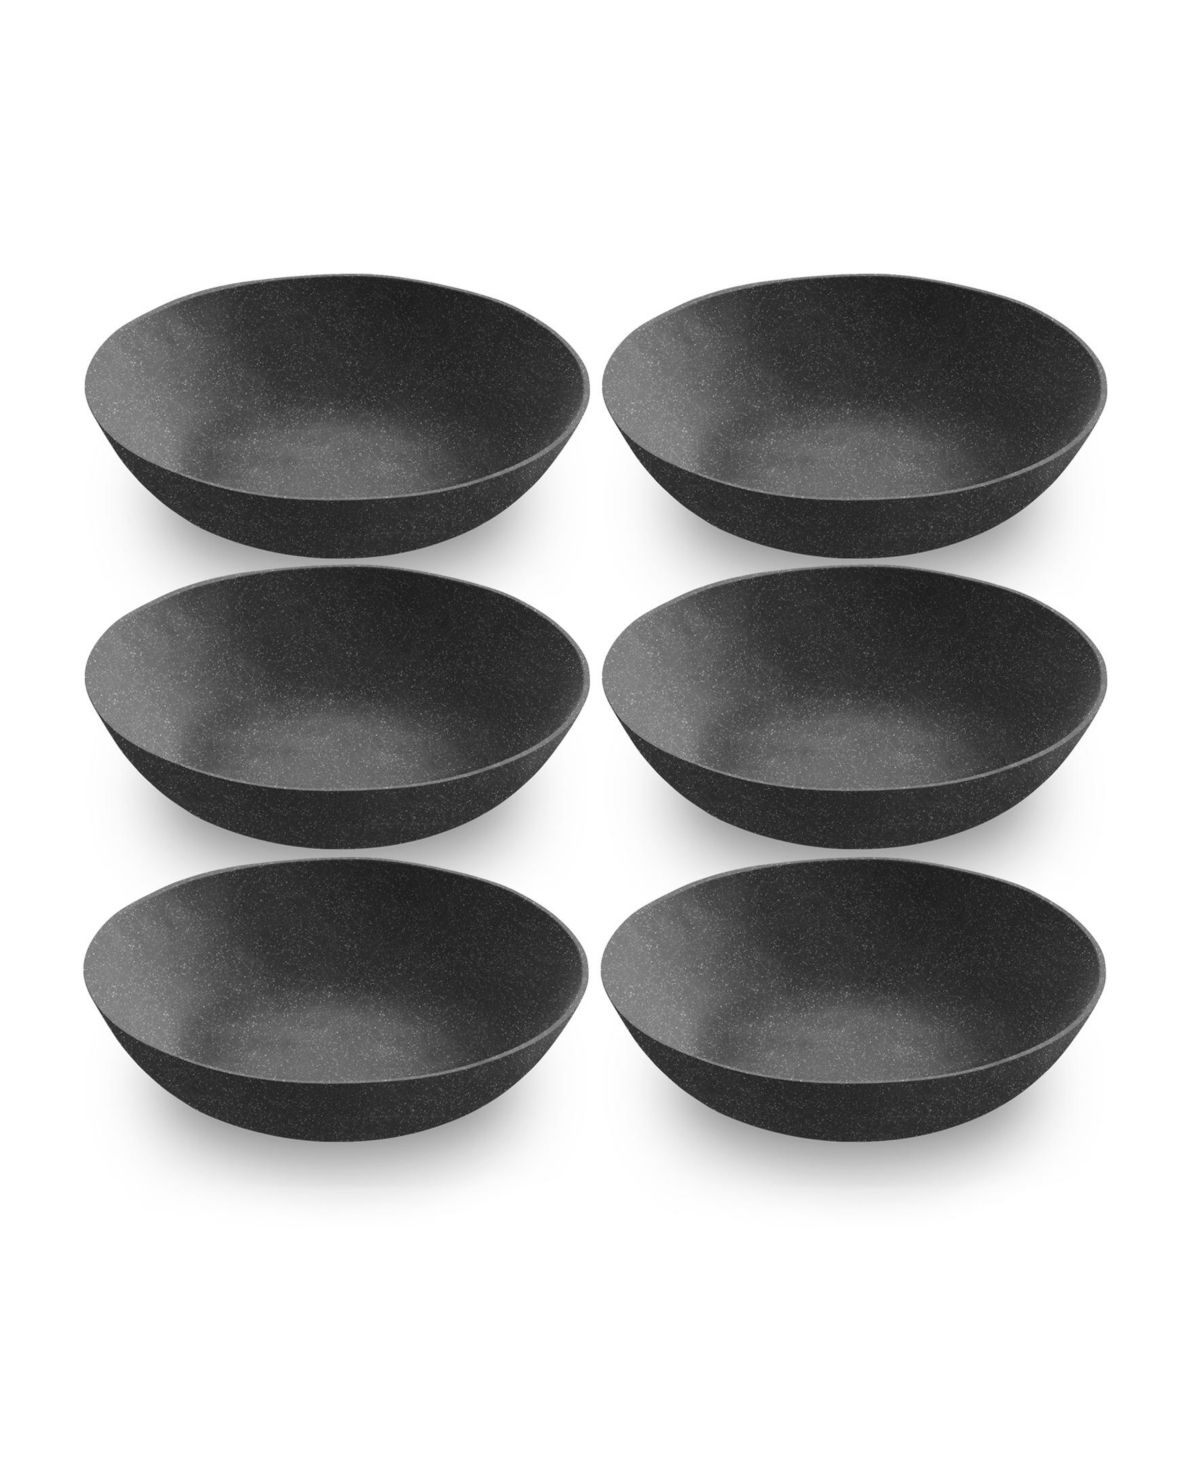 9" Planta 6-Piece Low Bowl Set, 25 oz - Black